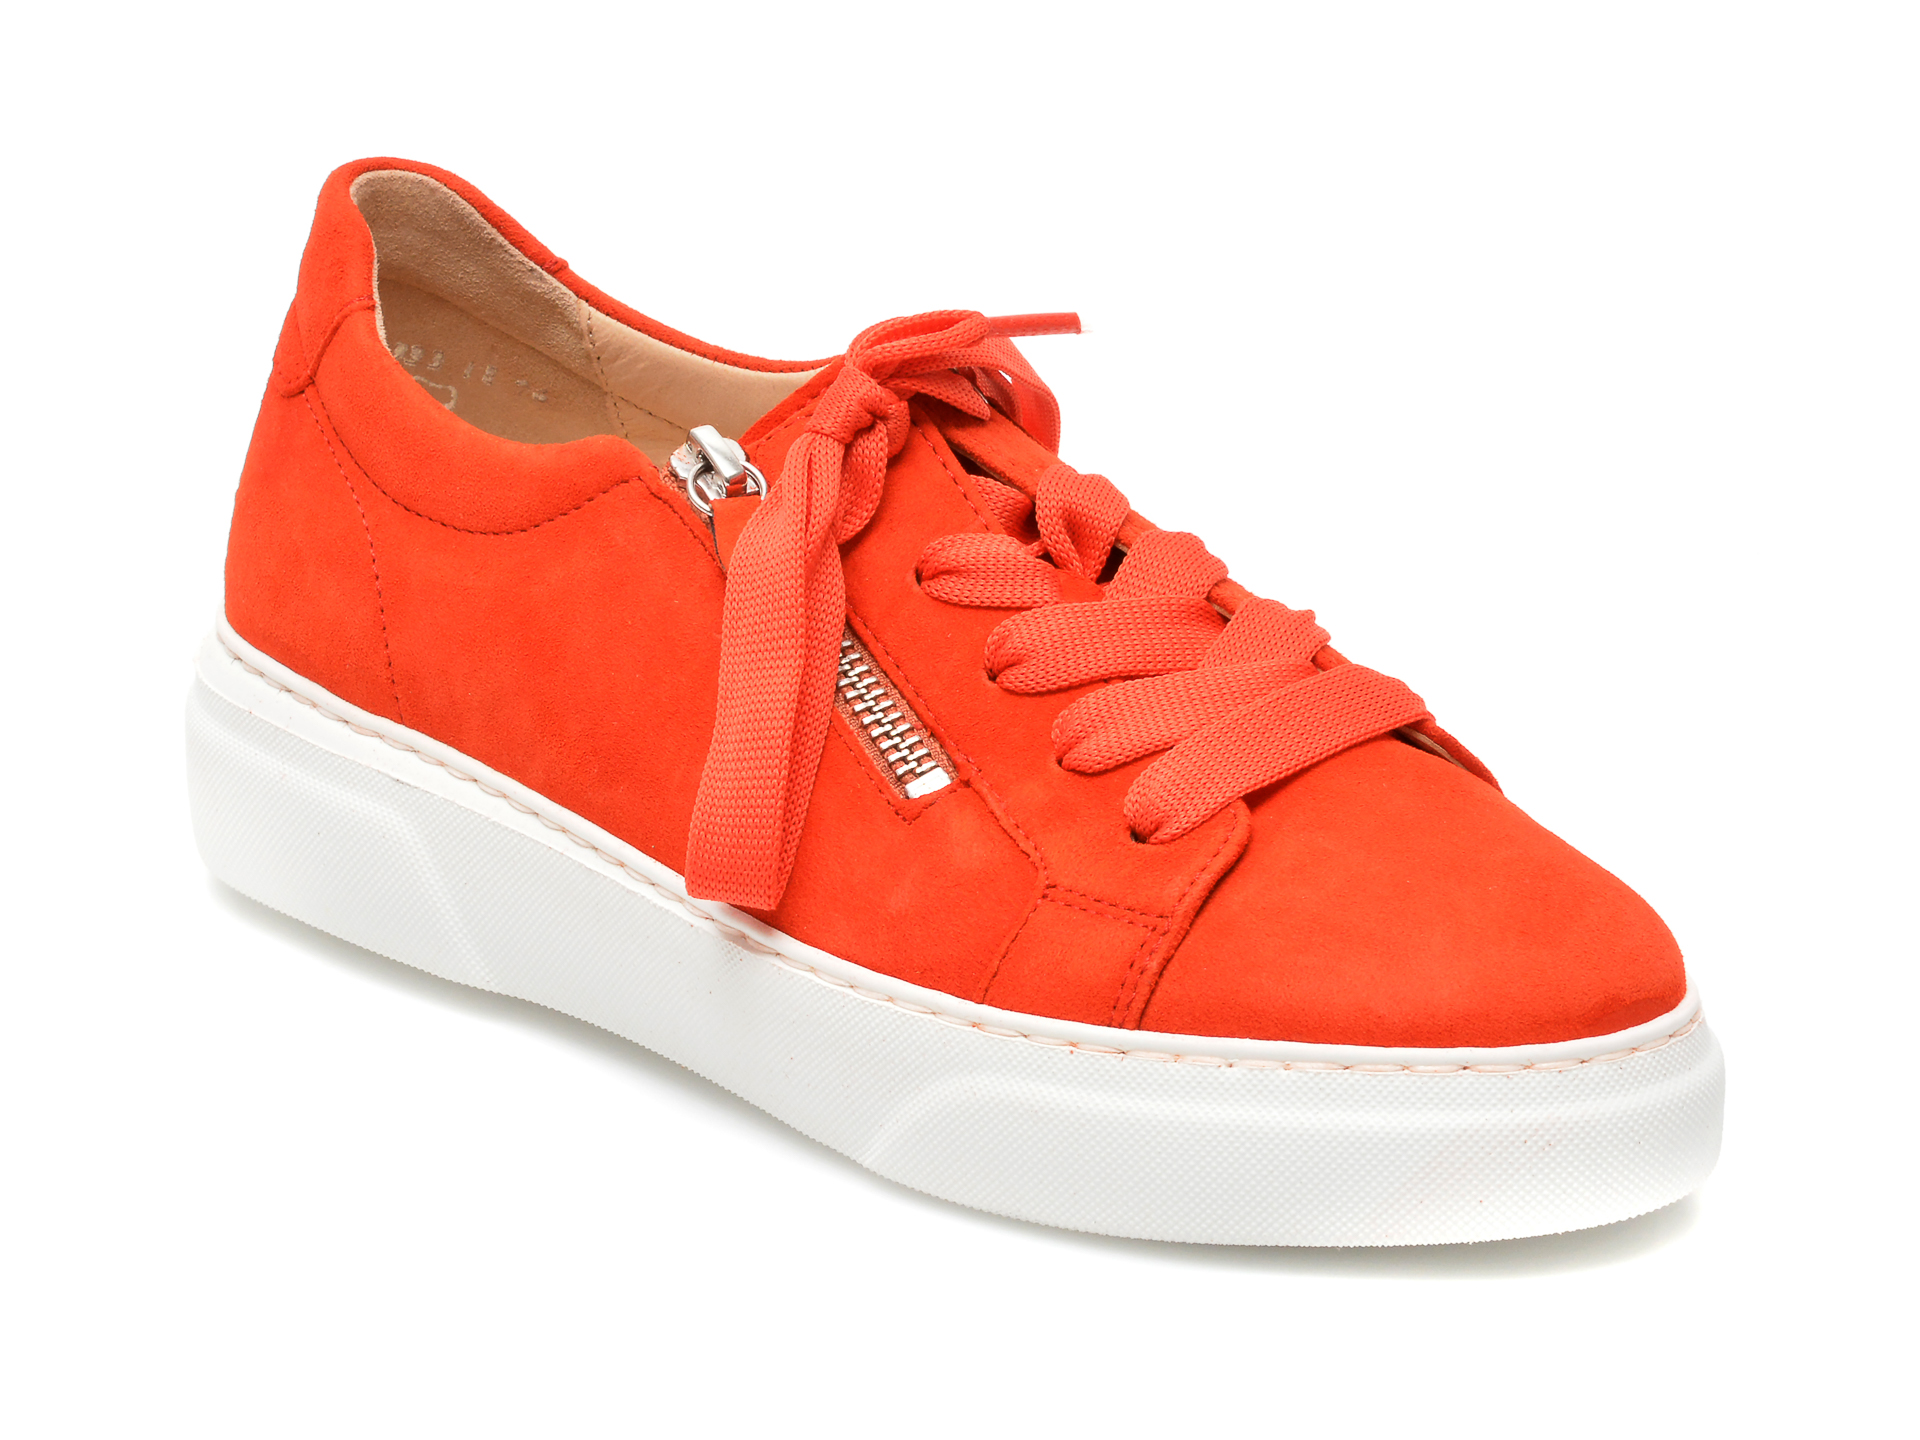 Pantofi GABOR portocalii, 43314, din piele intoarsa